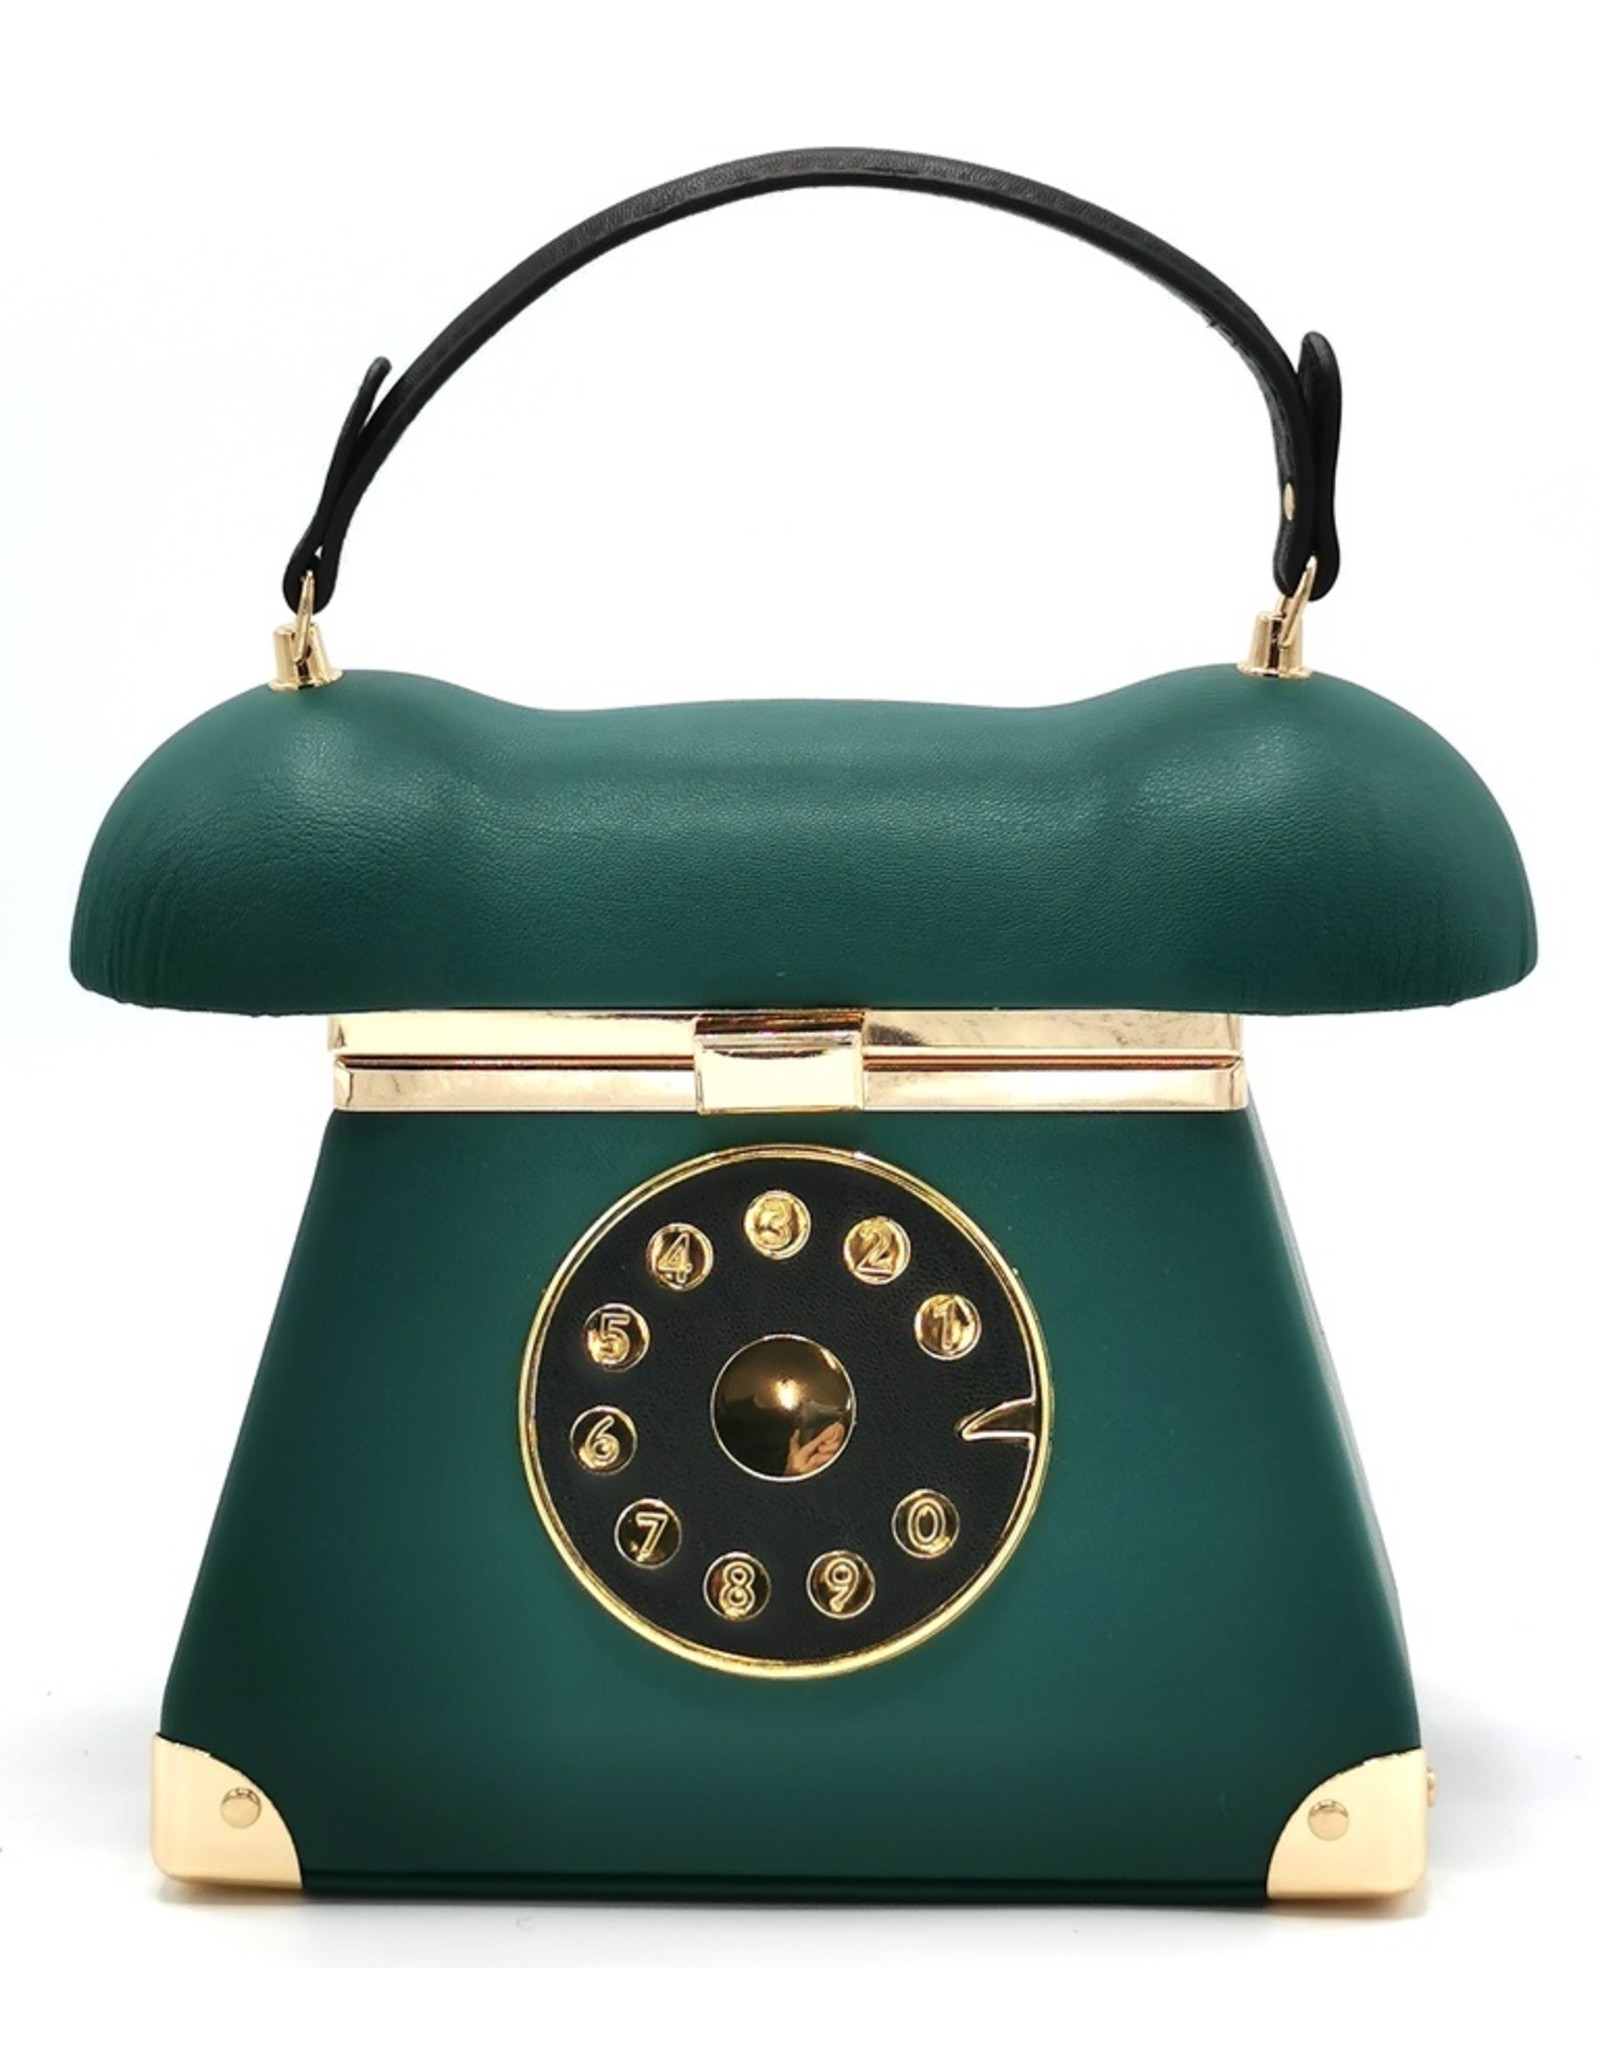 Magic Bags Fantasy bags and wallets - Telephone handbag Green